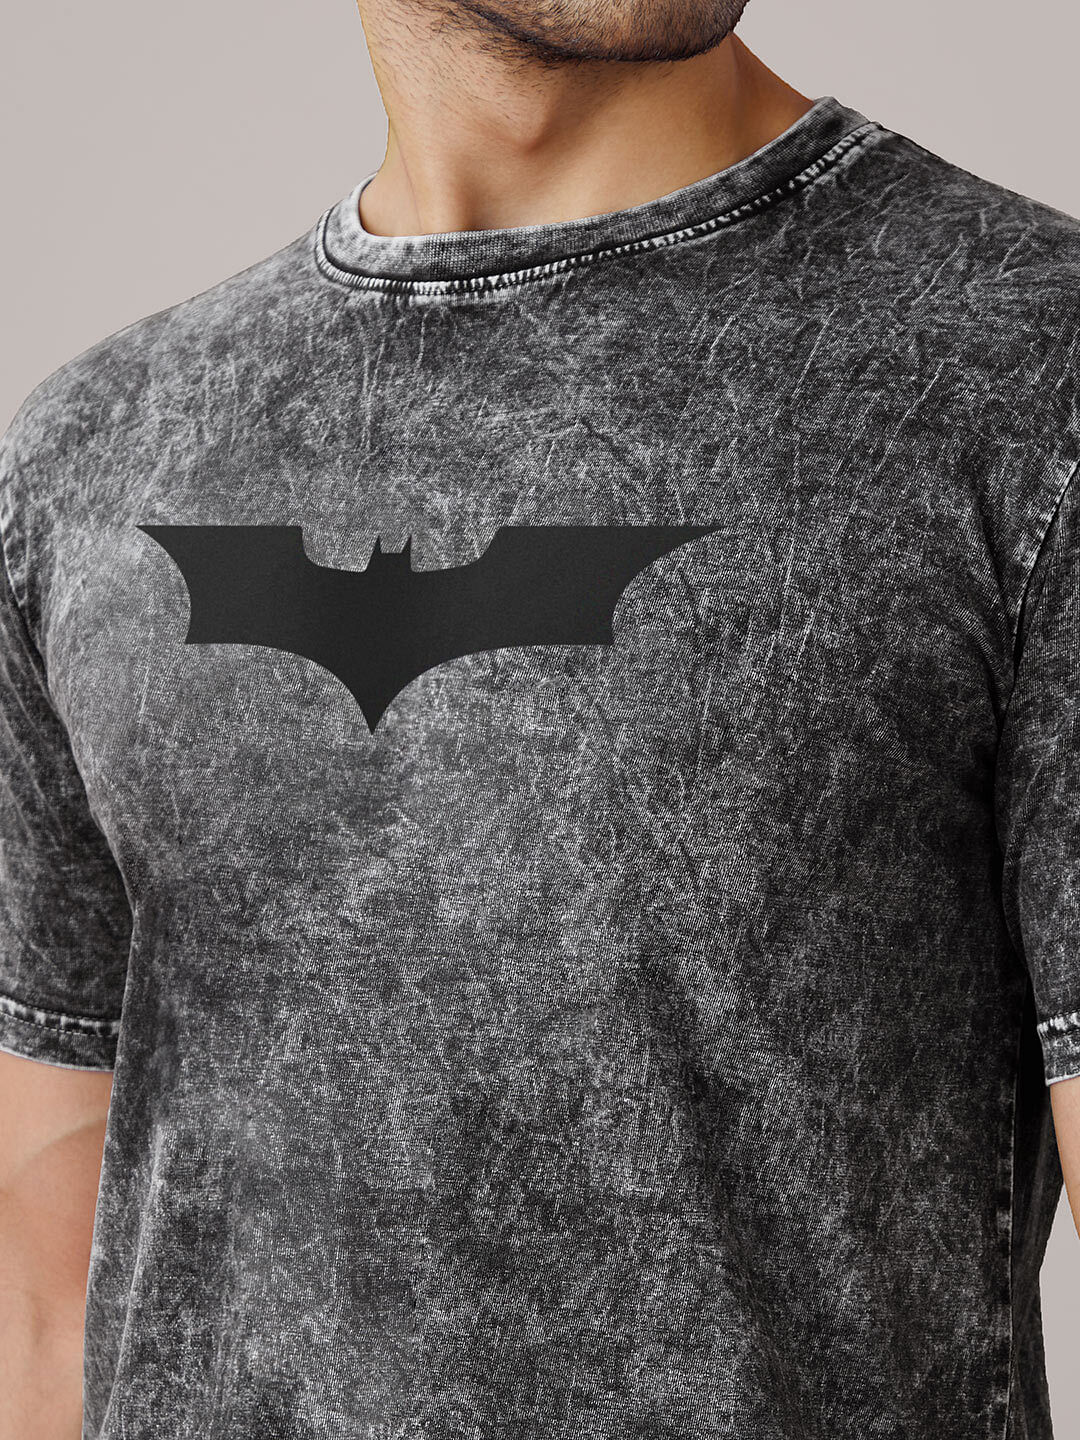 batman t shirt online